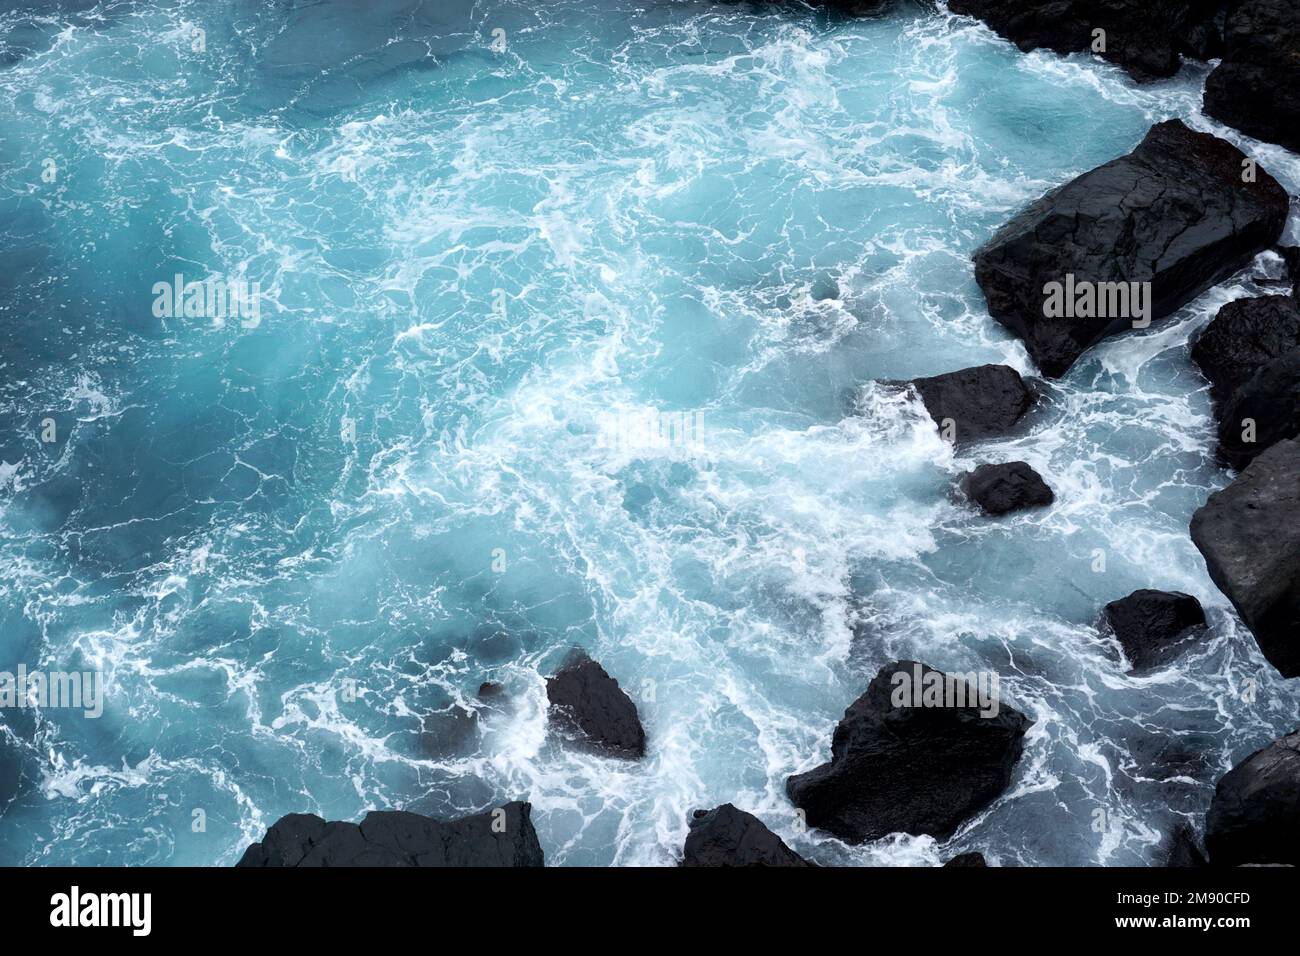 Die Kraft des Meeres - Wellen schlagen gegen dunkle Felsen Stockfoto